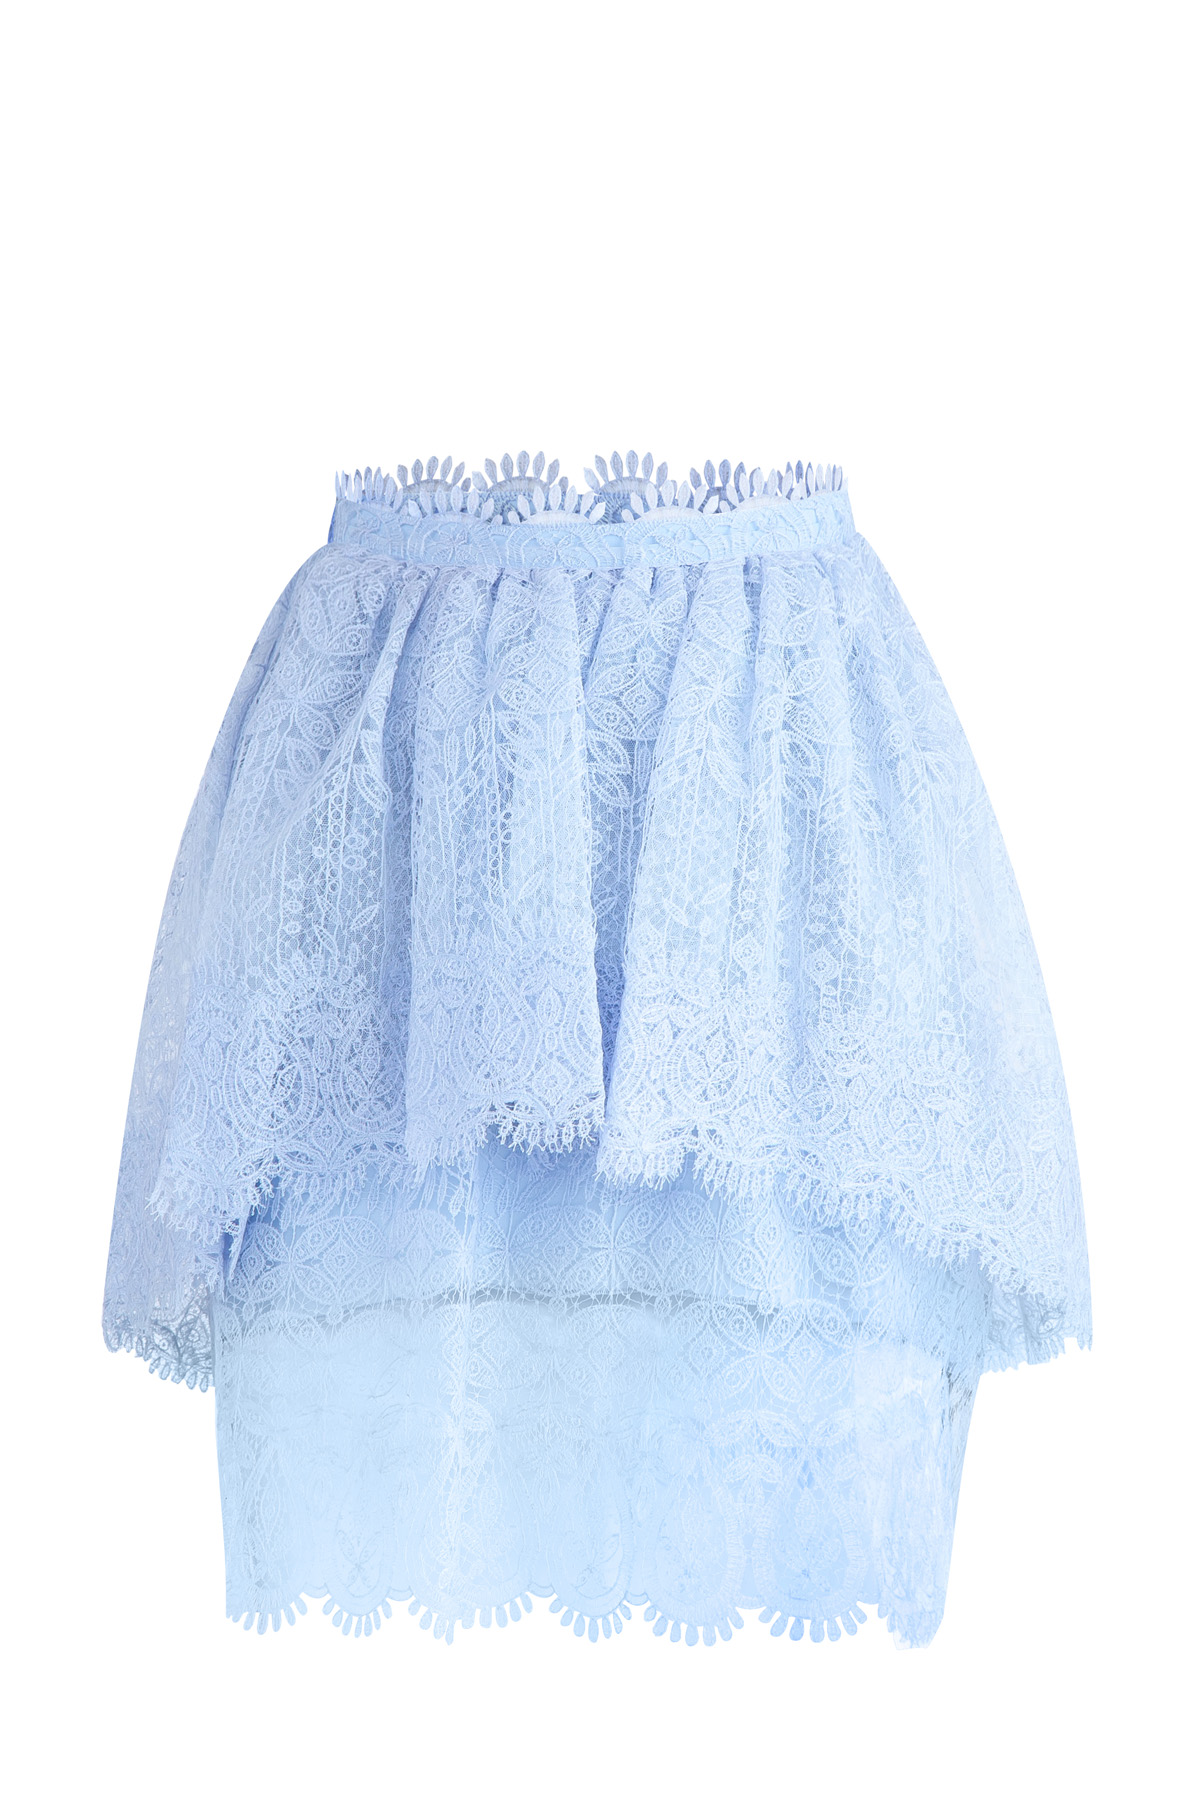 Многослойная юбка из кружева ручной работы с пышной баской ERMANNO SCERVINO, цвет голубой, размер 40;42 - фото 1